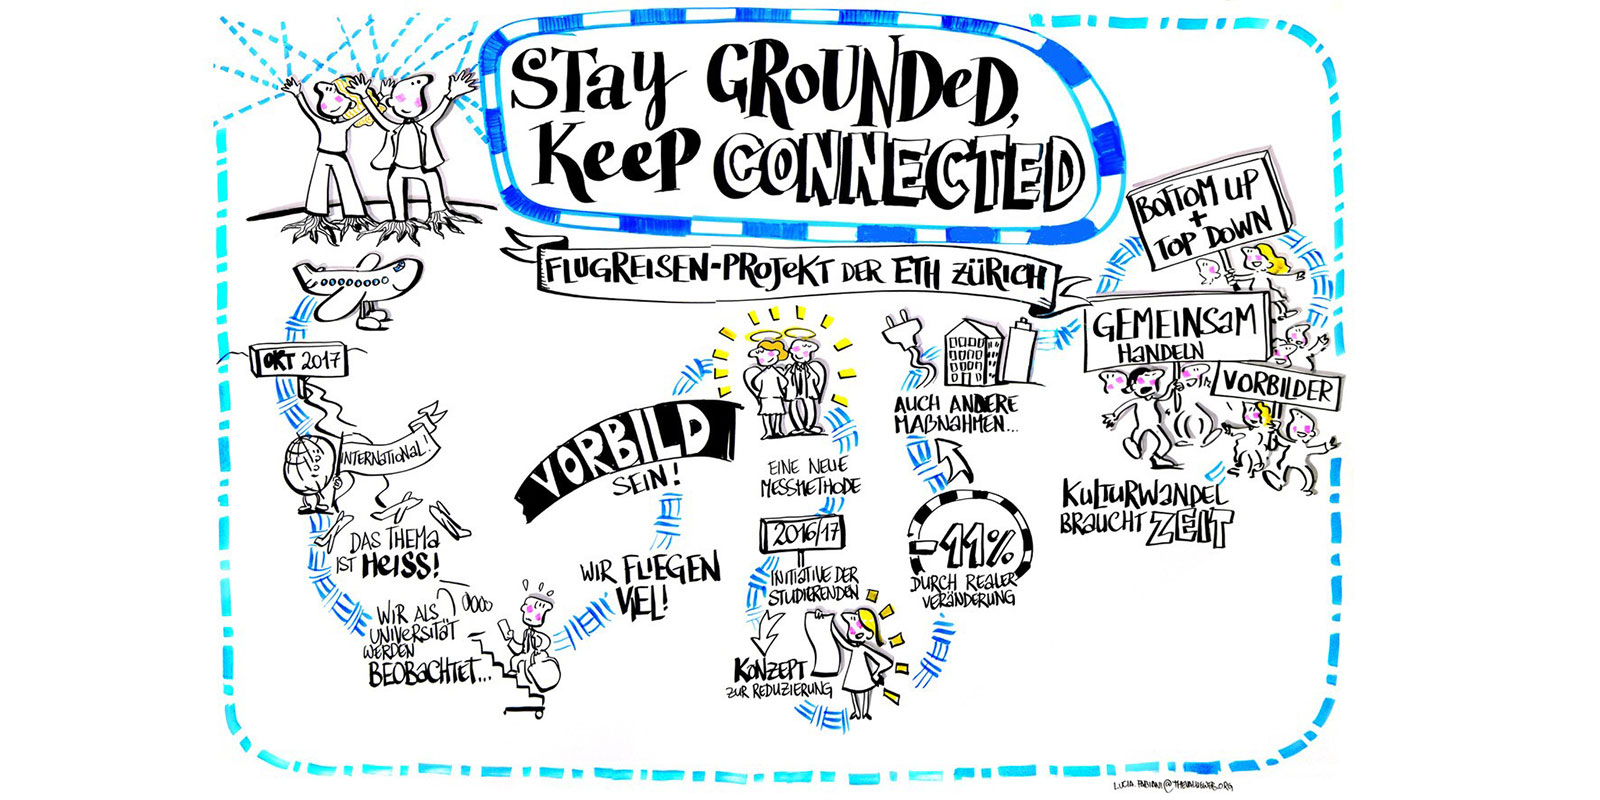 Vergr?sserte Ansicht: „Stay grounded-keep connected“ – Forum zum ETH Flugreisen-Projekt